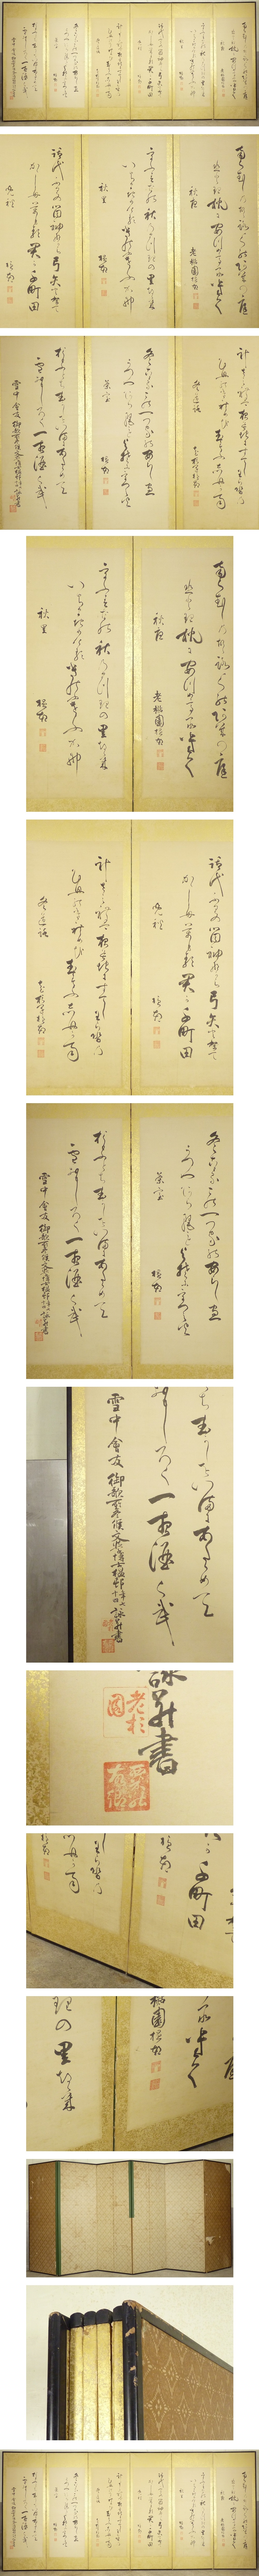 大阪買い大日本帝国文学博士 小杉温邨 筆 書 屏風 高さ 約172cm 六曲半双 絹本肉筆 書画 漢詩 掛軸